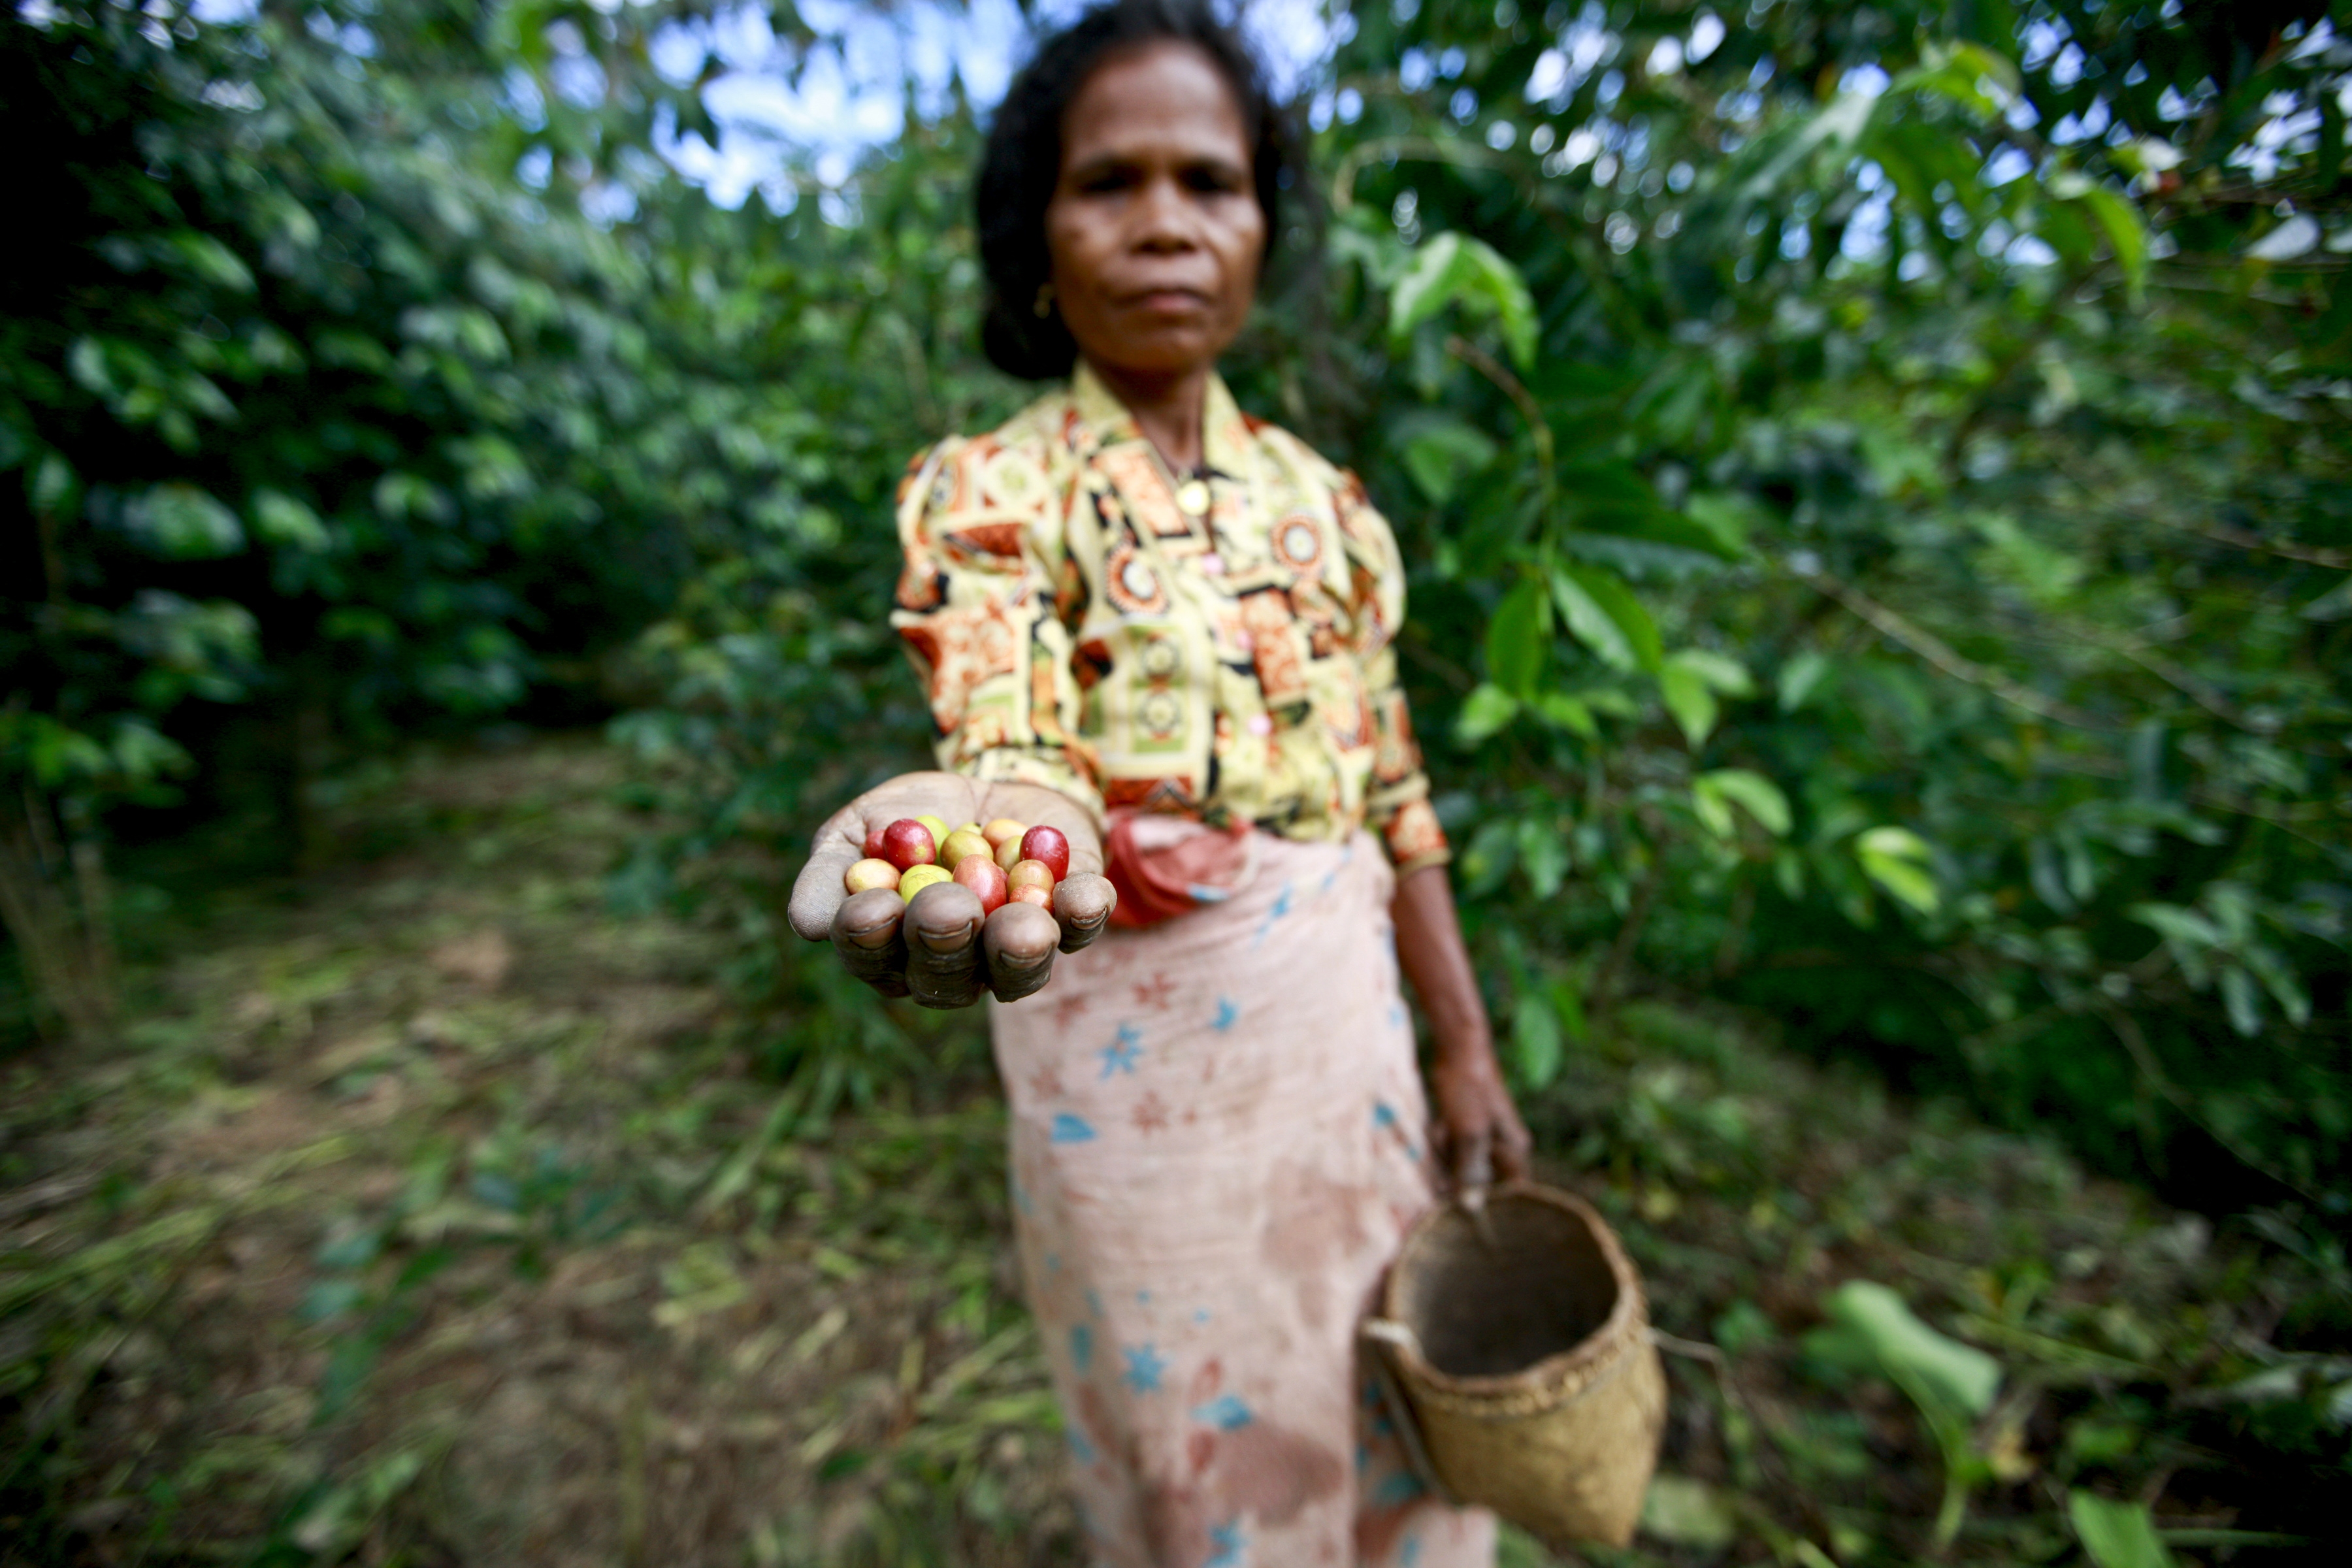 En kvinne plukker kaffe i Øst-Timor. Å kjøpe varer som for eksempel kaffe fra produsenter som sørger for gode arbeidsforhold er en tiltak vi forbrukere kan gjøre. Foto: UN Photo/Martine Perret